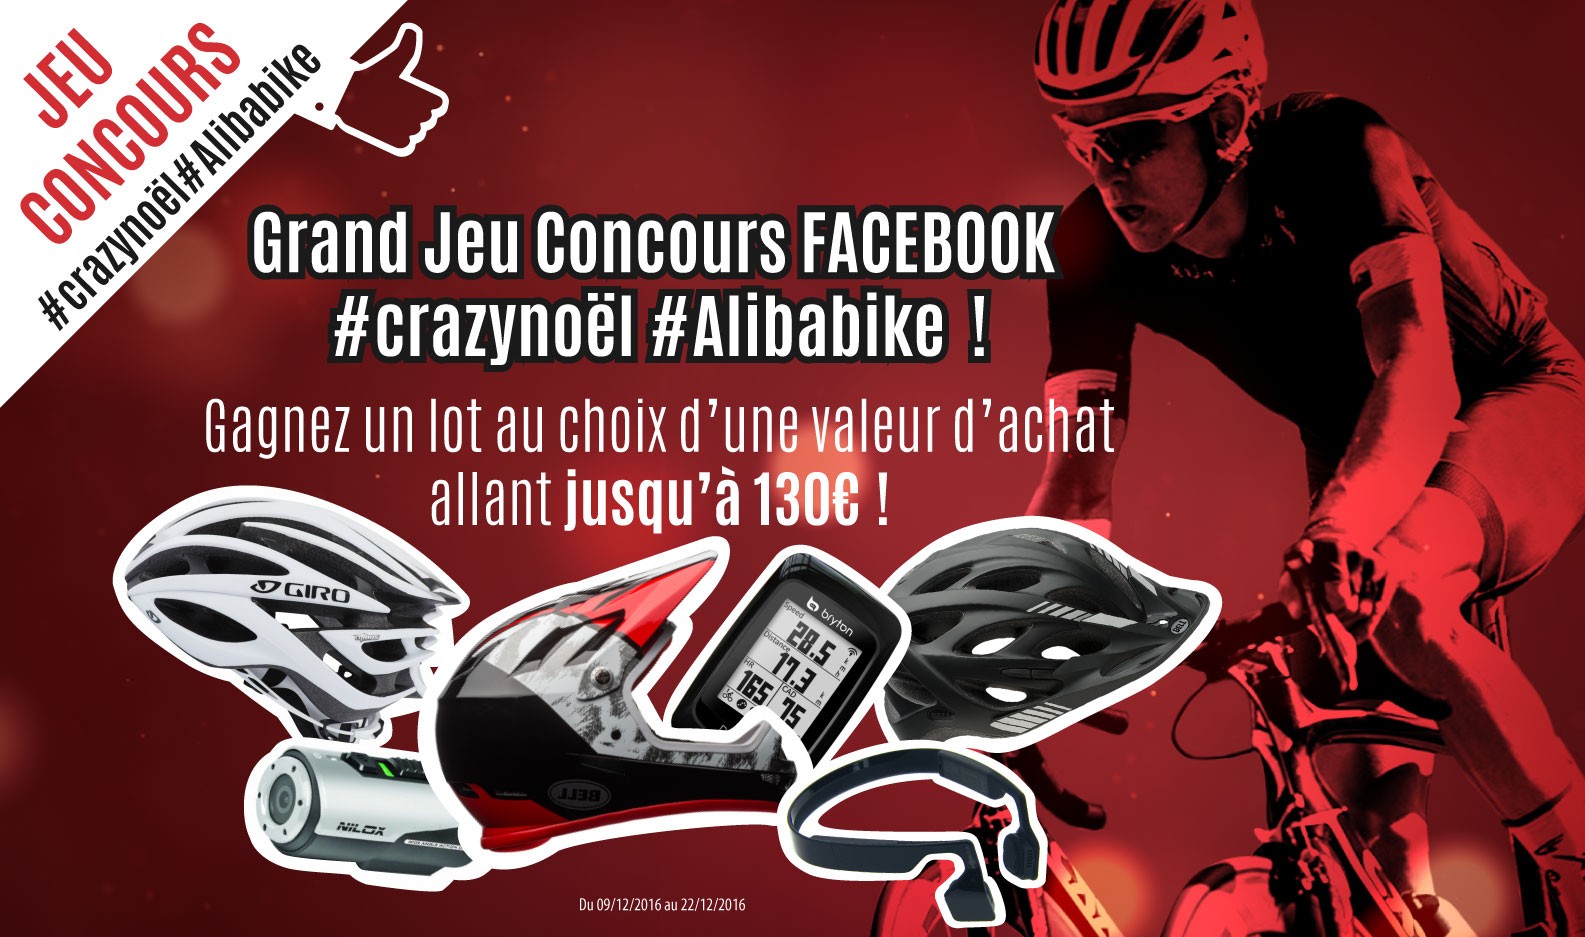 Grand Jeu Concours Facebook #crazynoël#Alibabike; gagnez un lot au choix d'une valeur d'achat allant jusqu'à 130€ du 09 au 22/12/2016 sur Alibabike